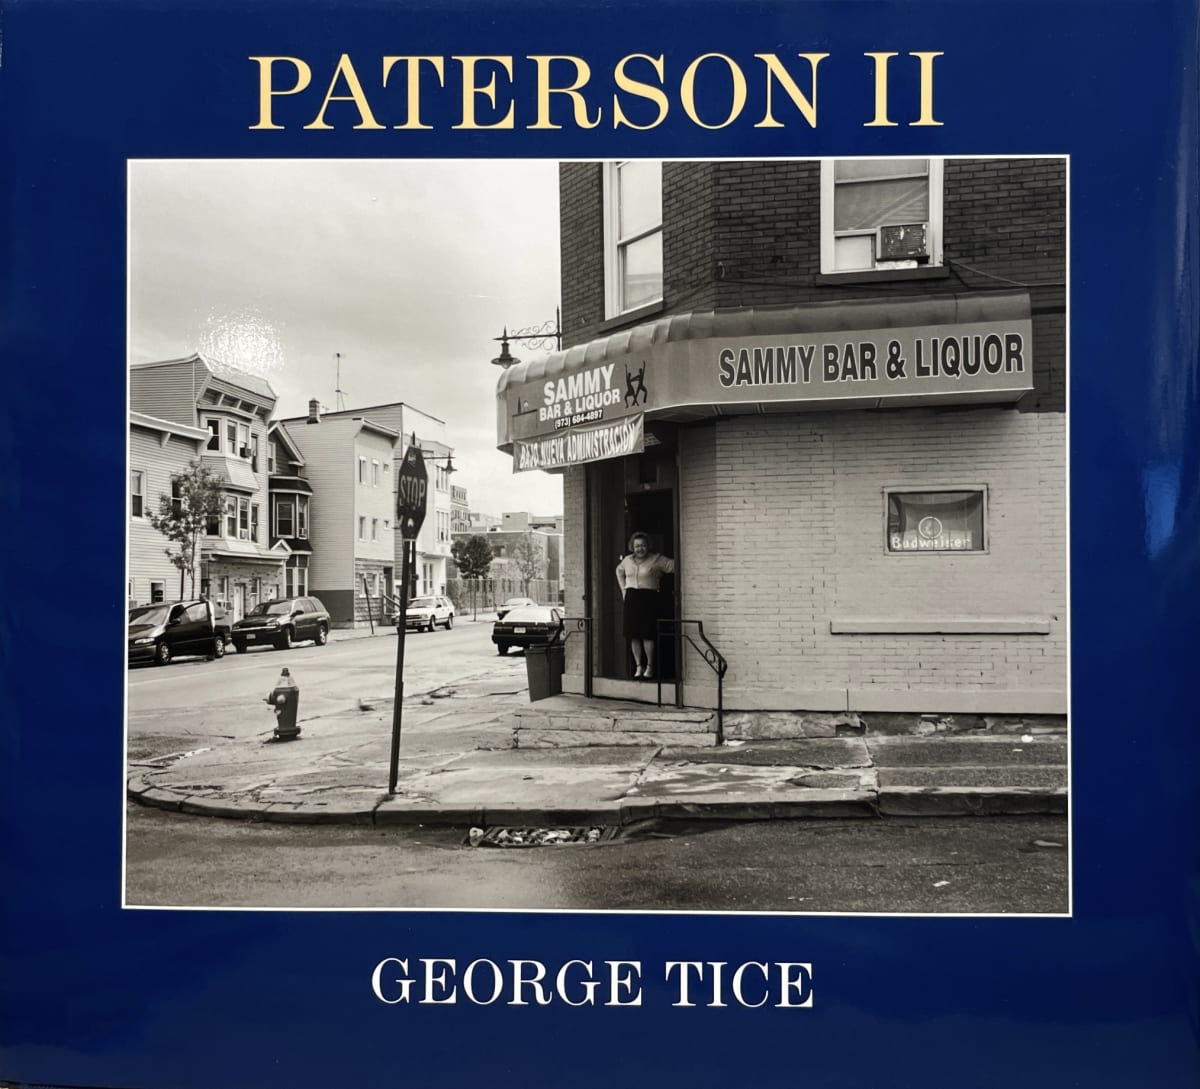 【好評豊富な】George Tice Paterson Ⅱ photo book ジョージ A. タイス 写真集 アート写真